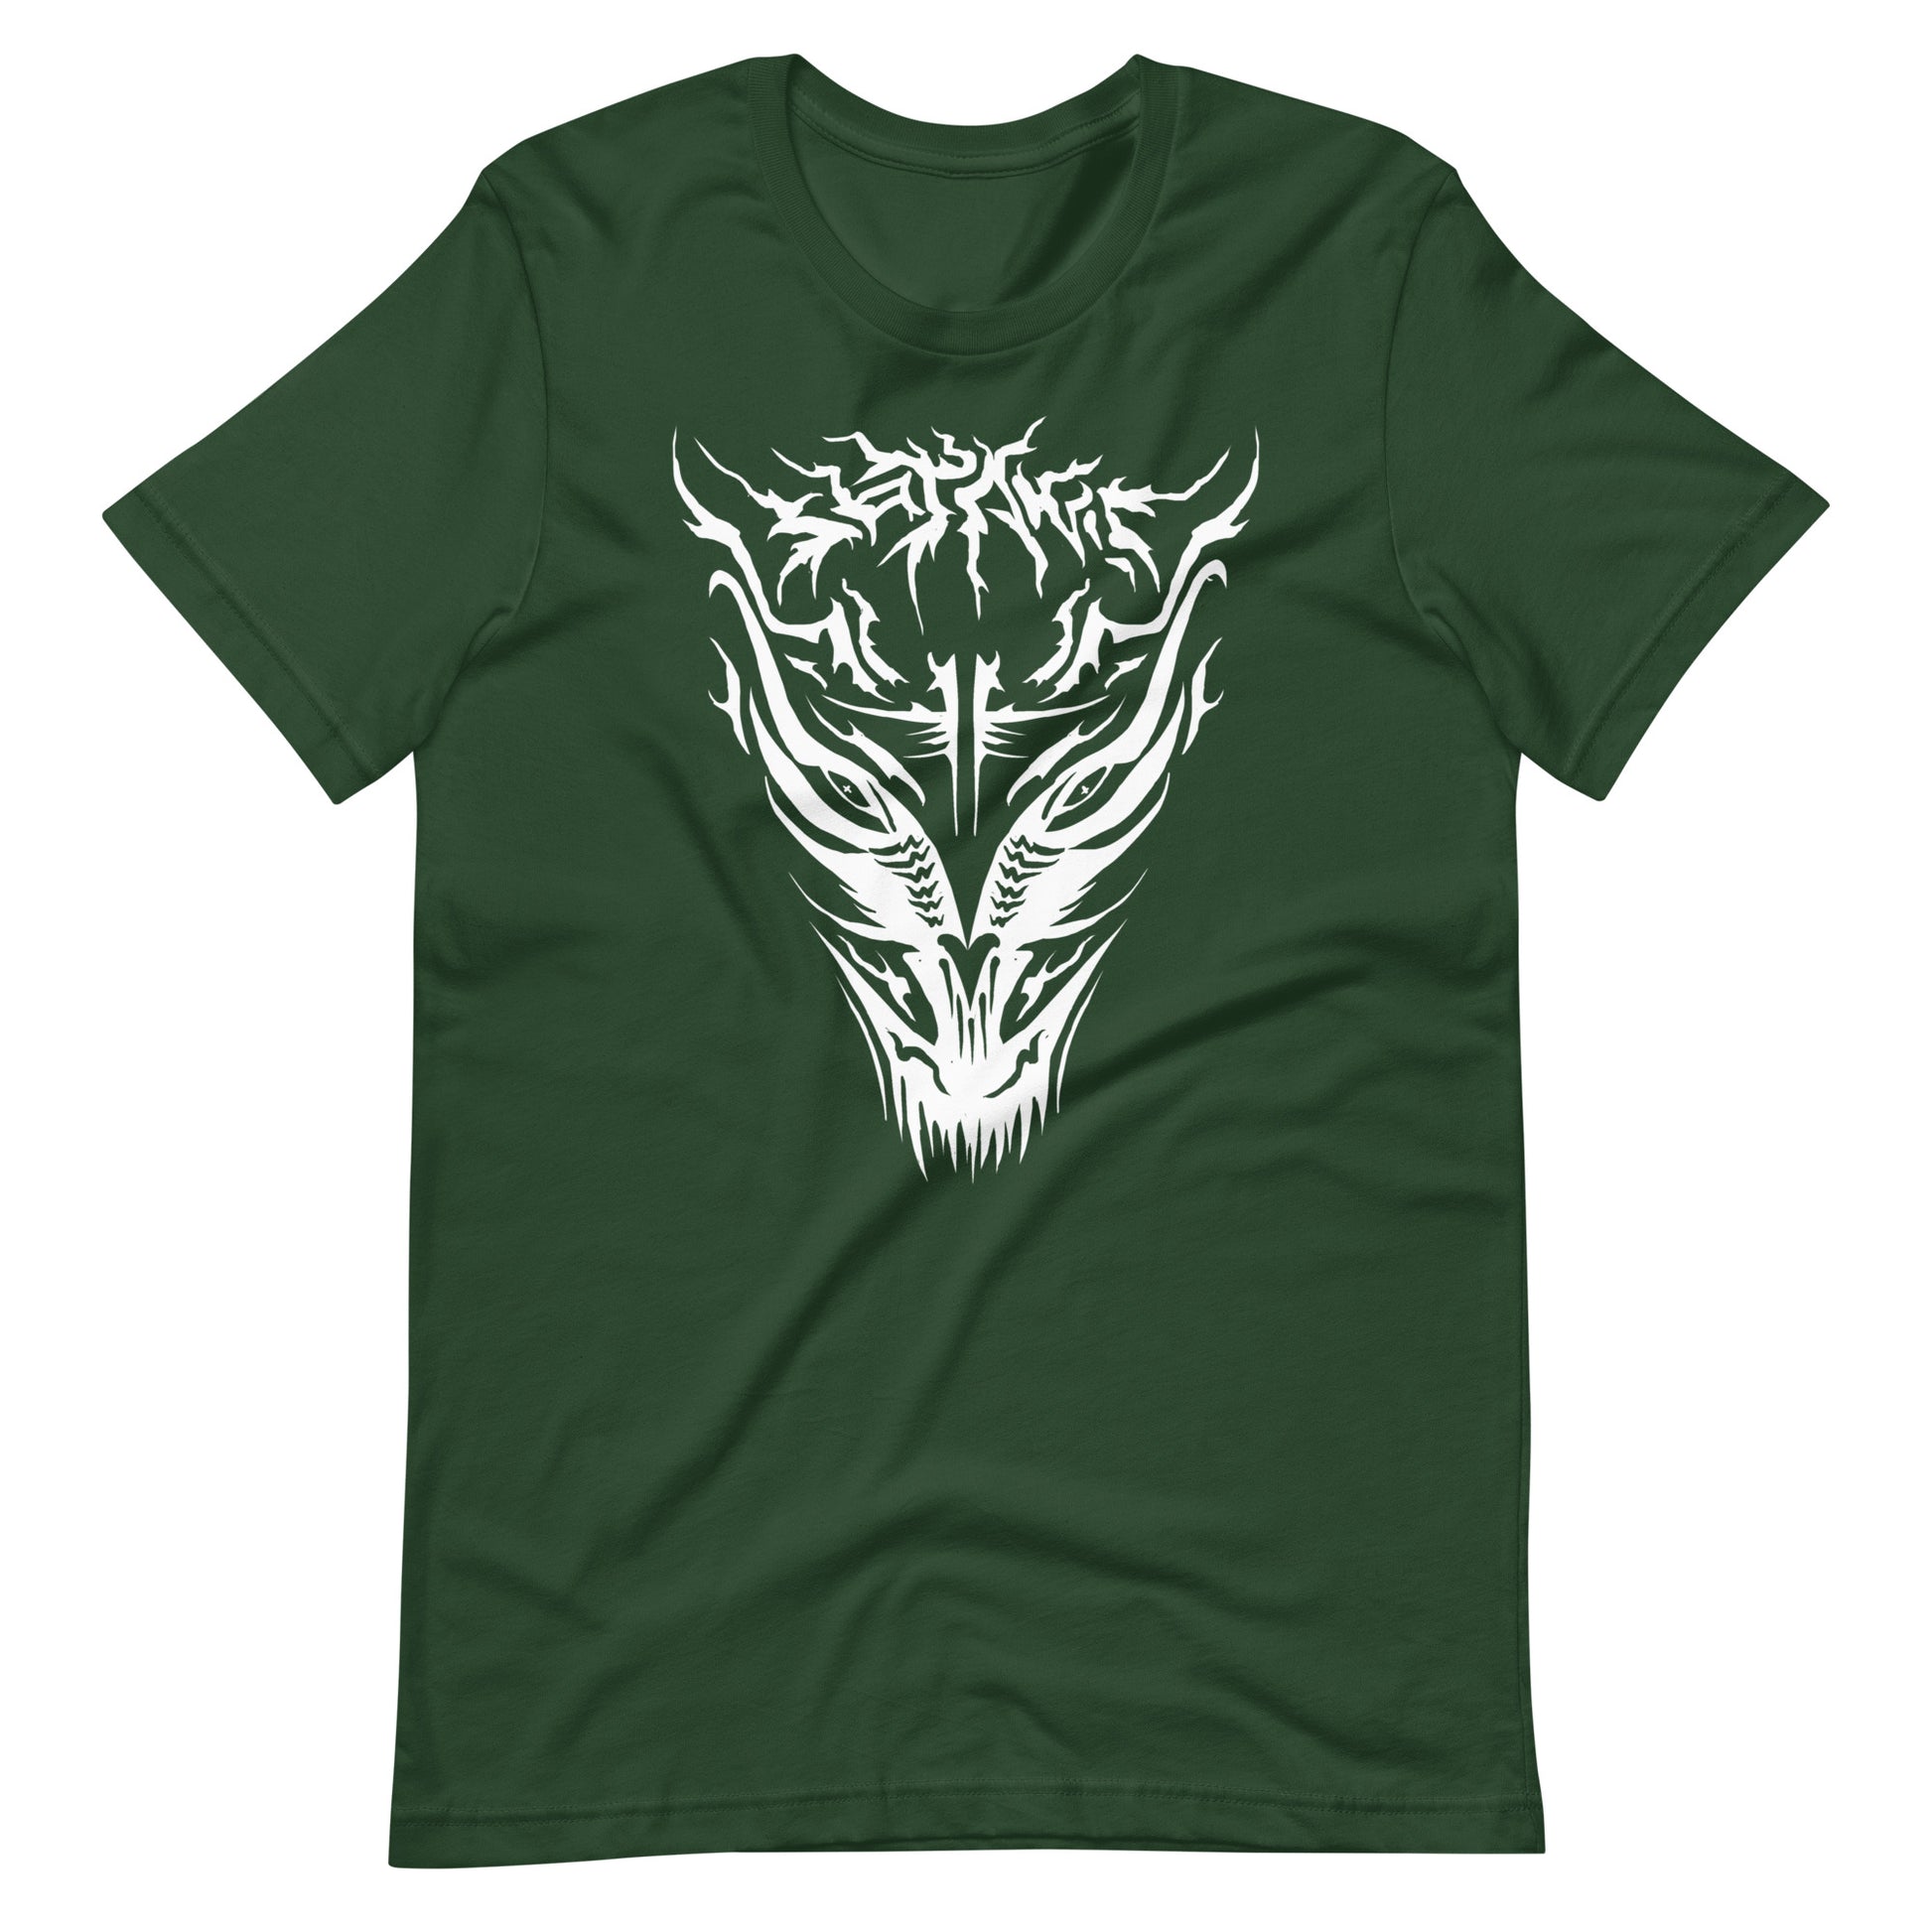 Demon - Men's t-shirt - Forest Front